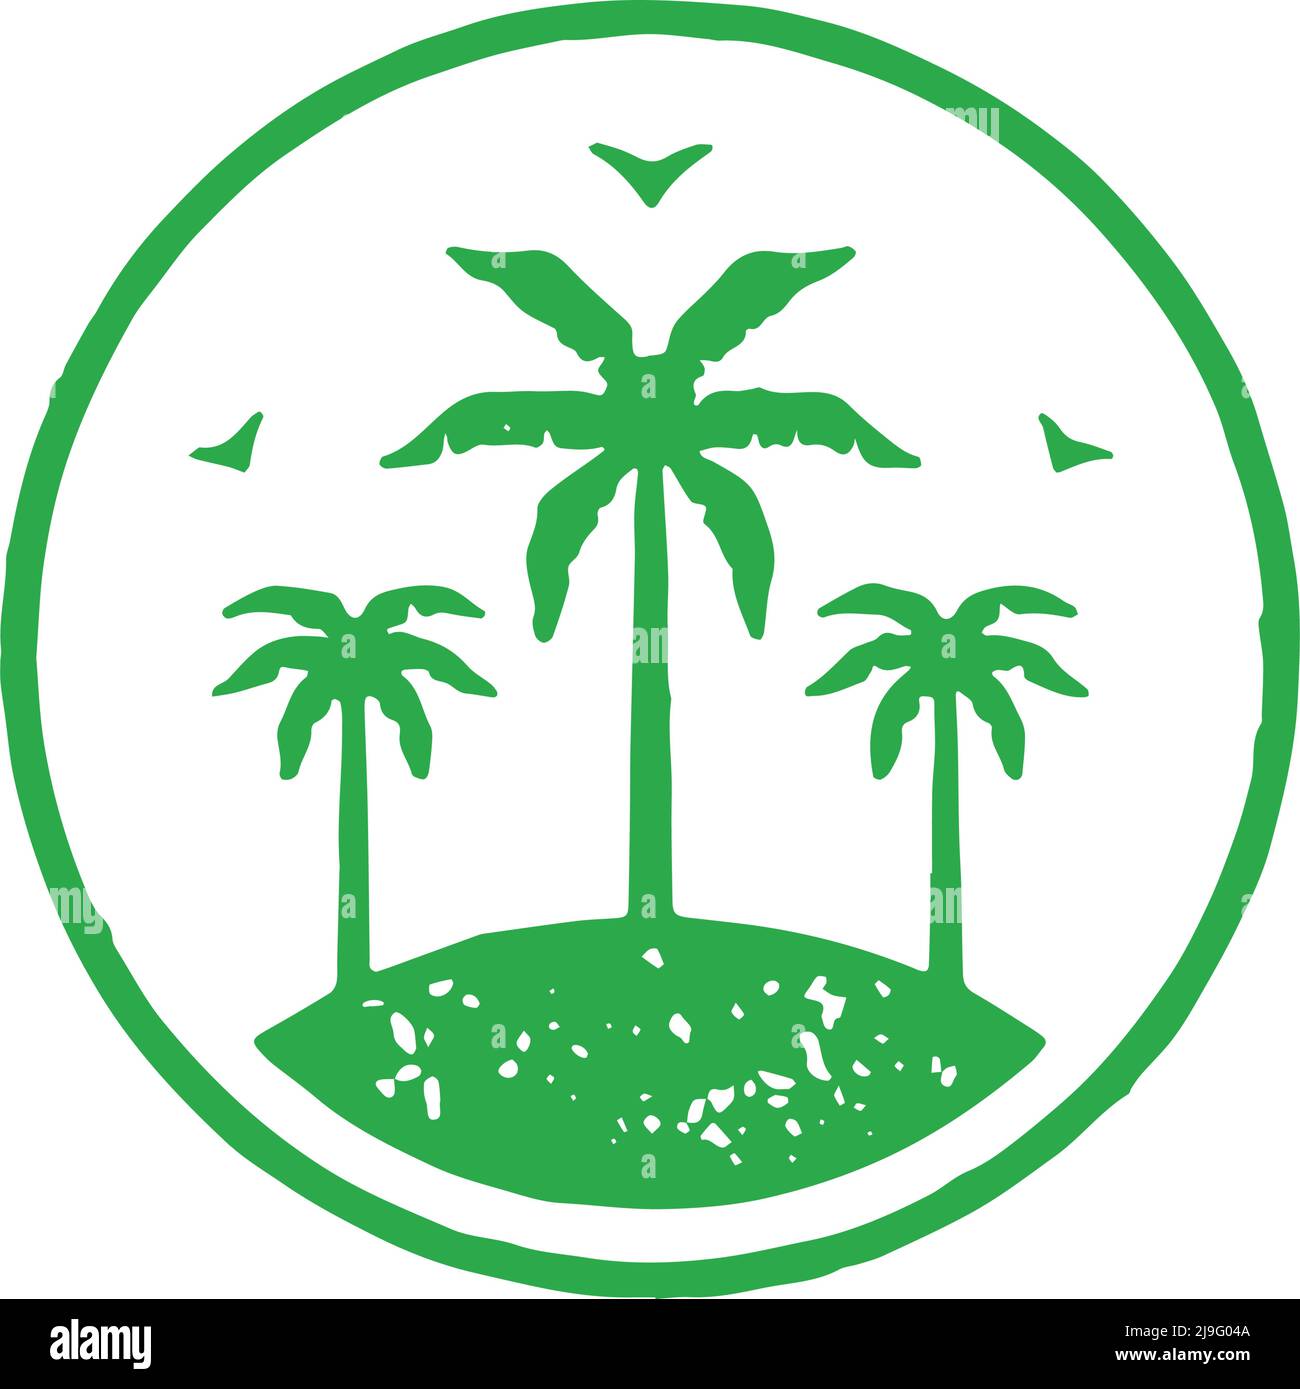 Unbewohnte Meerinsel mit Palmen Dschungel und fliegenden Möwen grünen Kreis Logo Grunge Textur Vektor Illustration. Wilde Natur Landschaft tropisch Stock Vektor